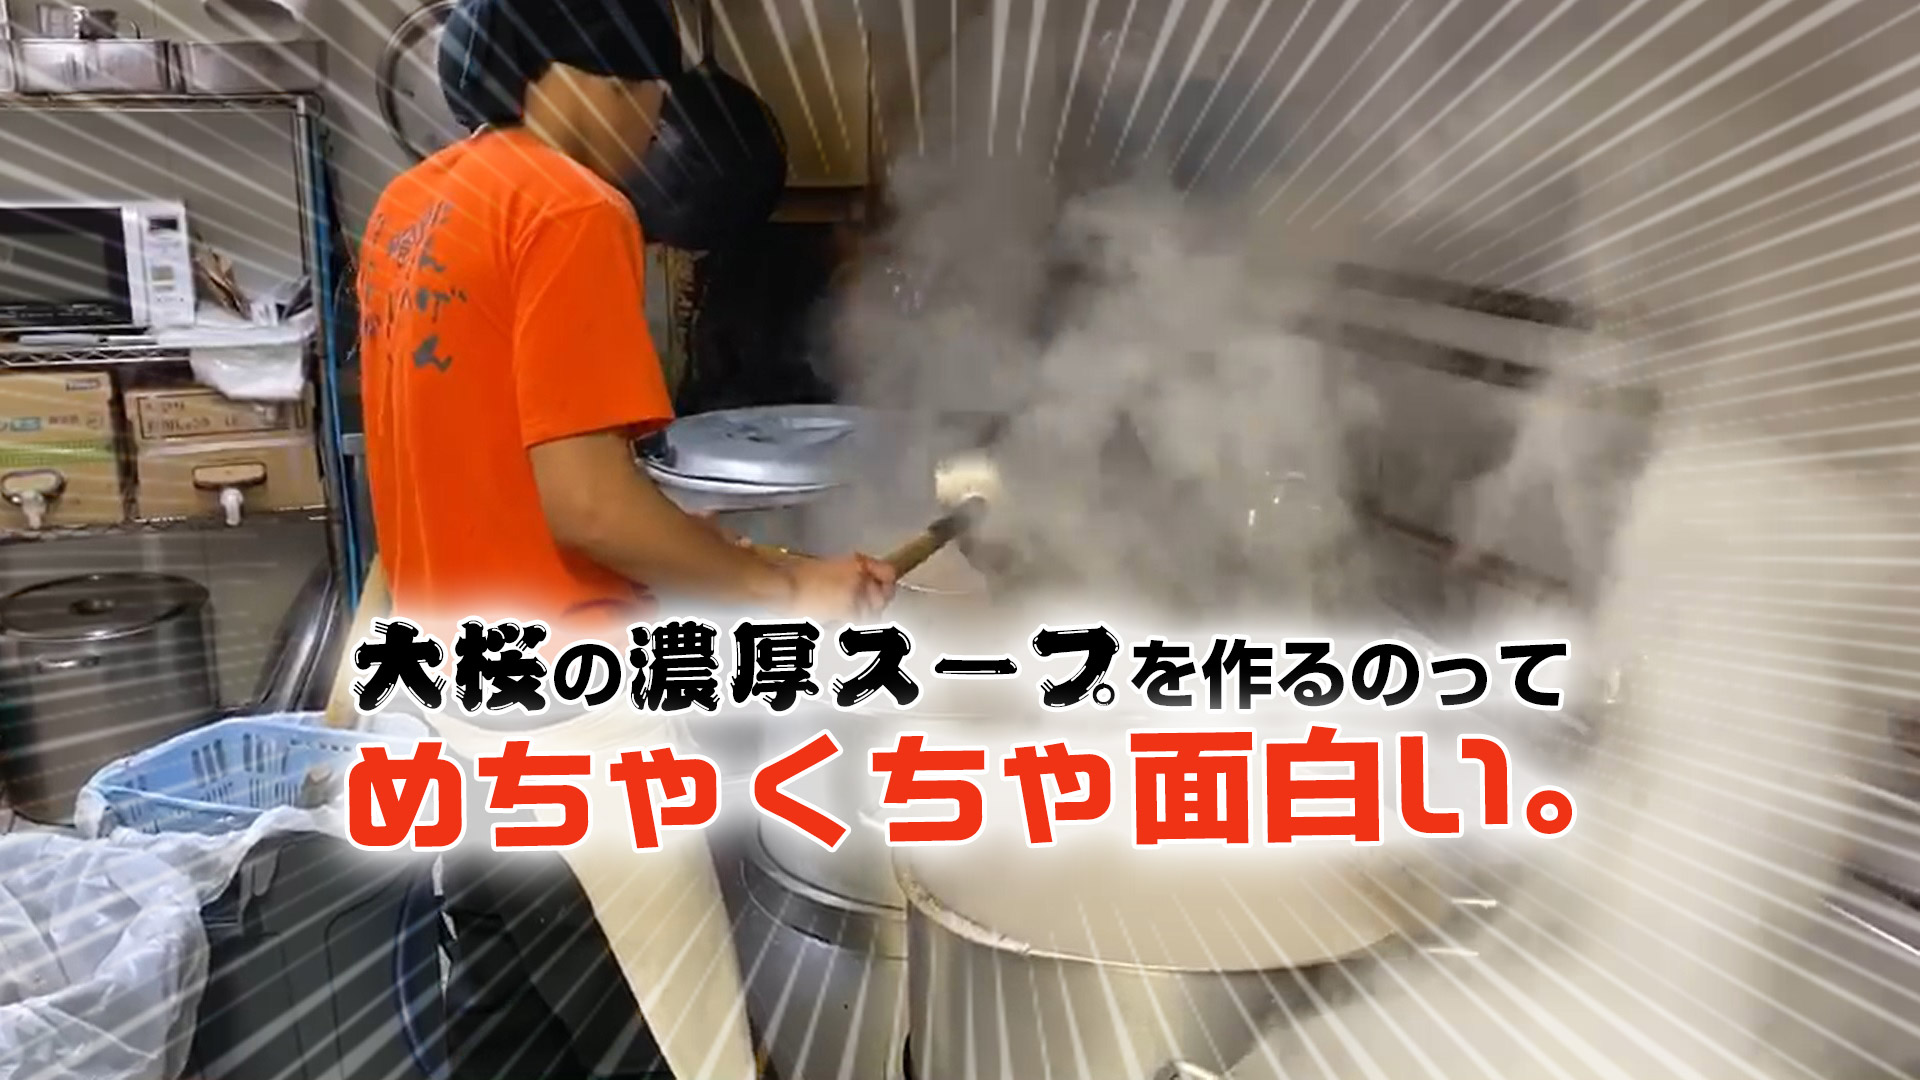 大桜の濃厚スープを作るのってめちゃくちゃ面白い。